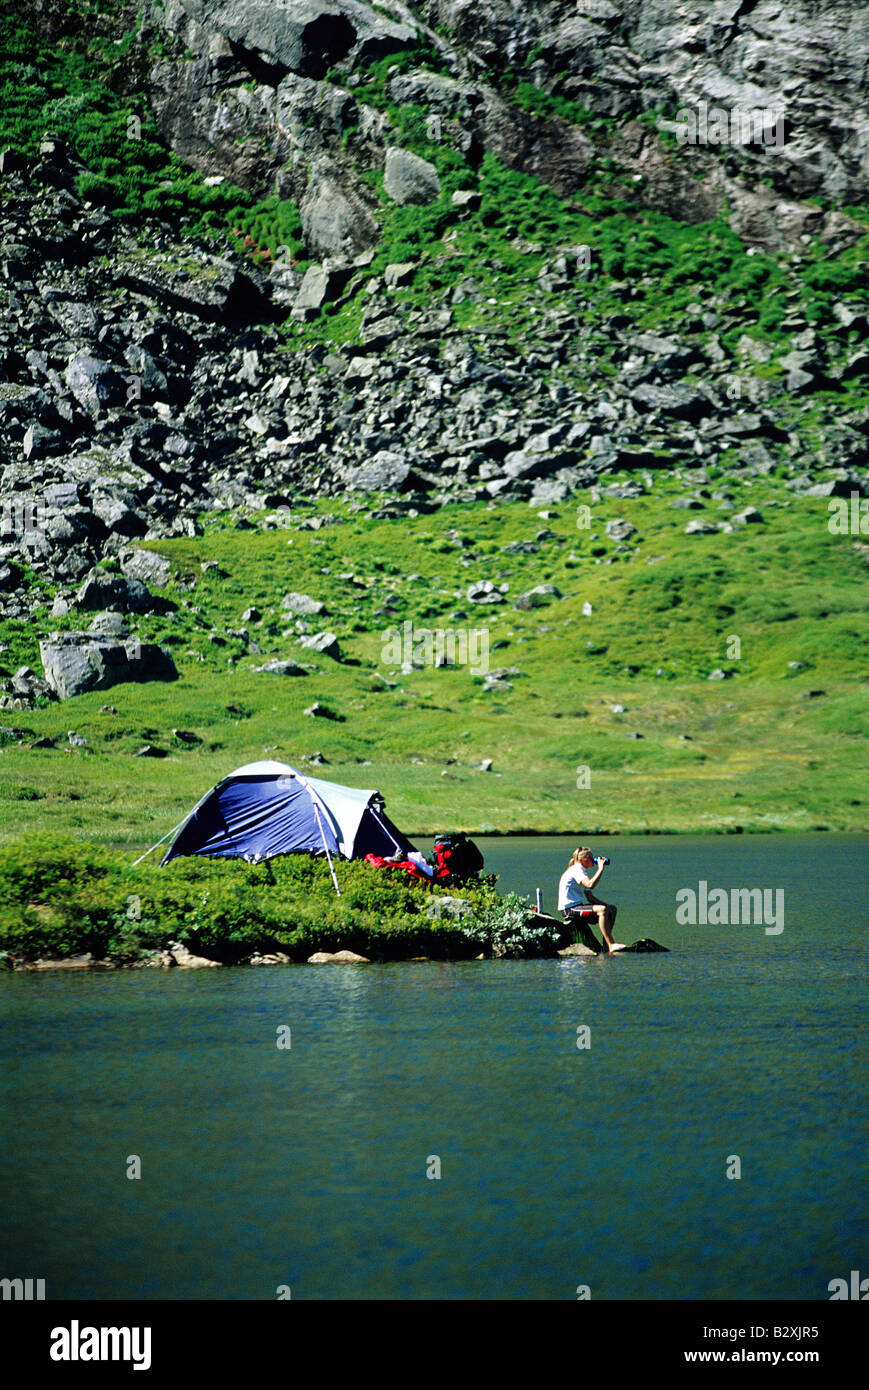 En plein air au camping Camping-lac par boisson potable (loin) Banque D'Images